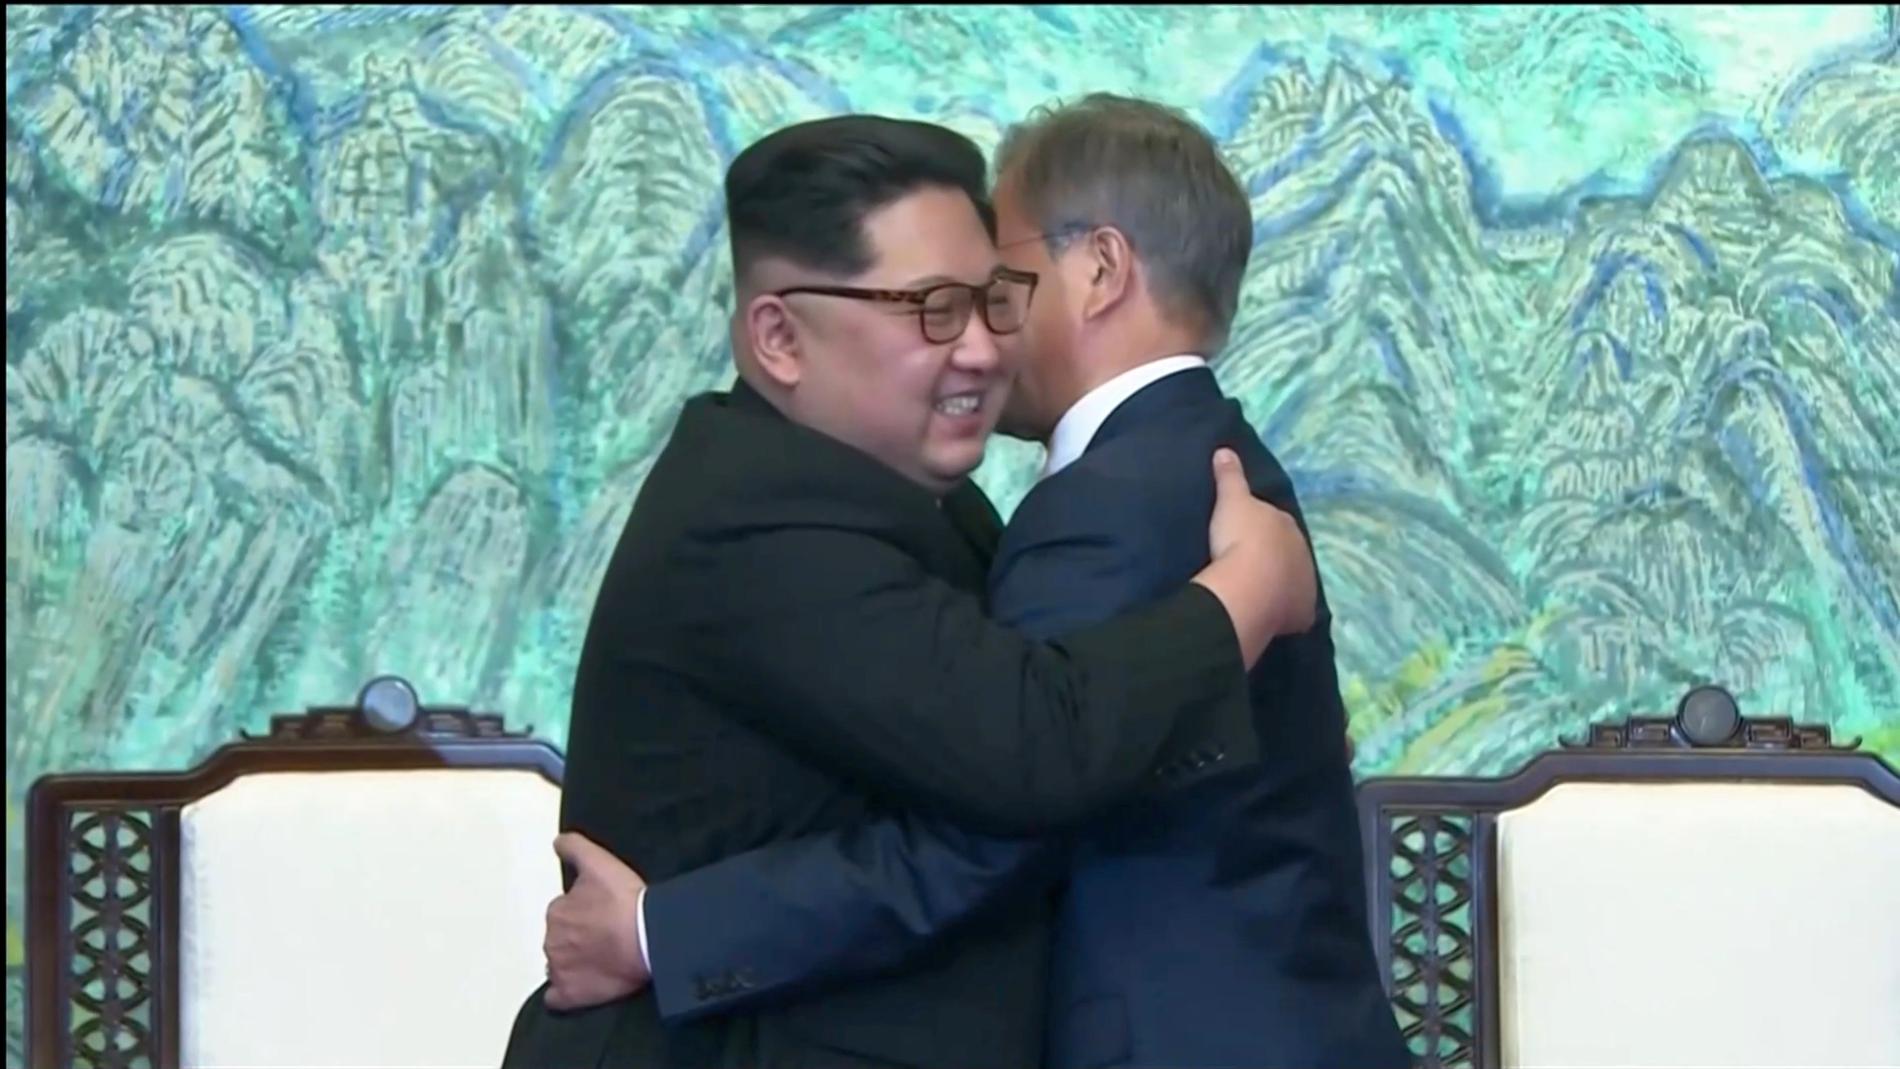 Kim Jong-un och Moon Jae-in möts i en kram.